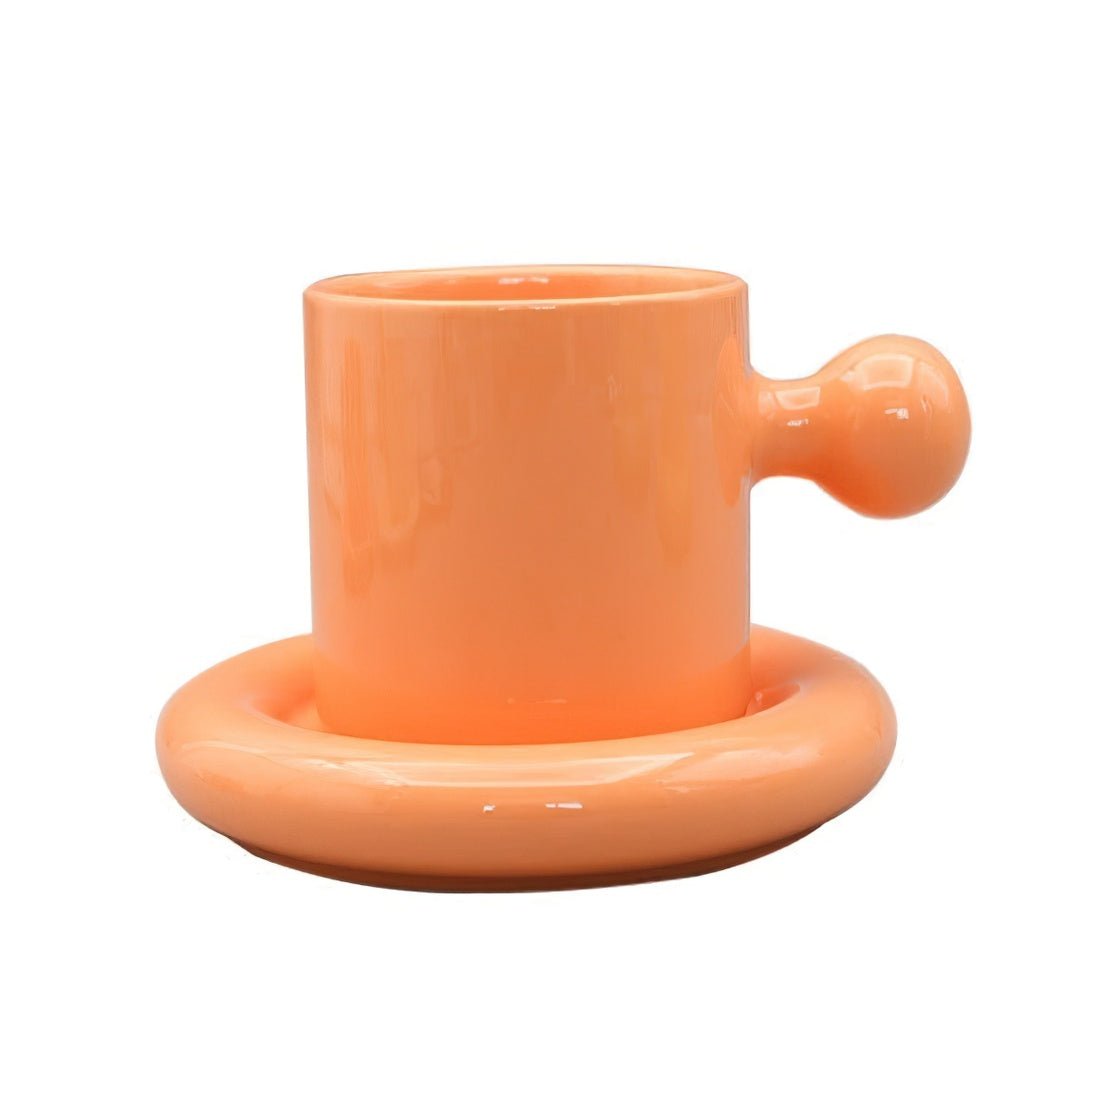 Orange Shrek Ear Mug, ceramic knob handle mug with saucer.